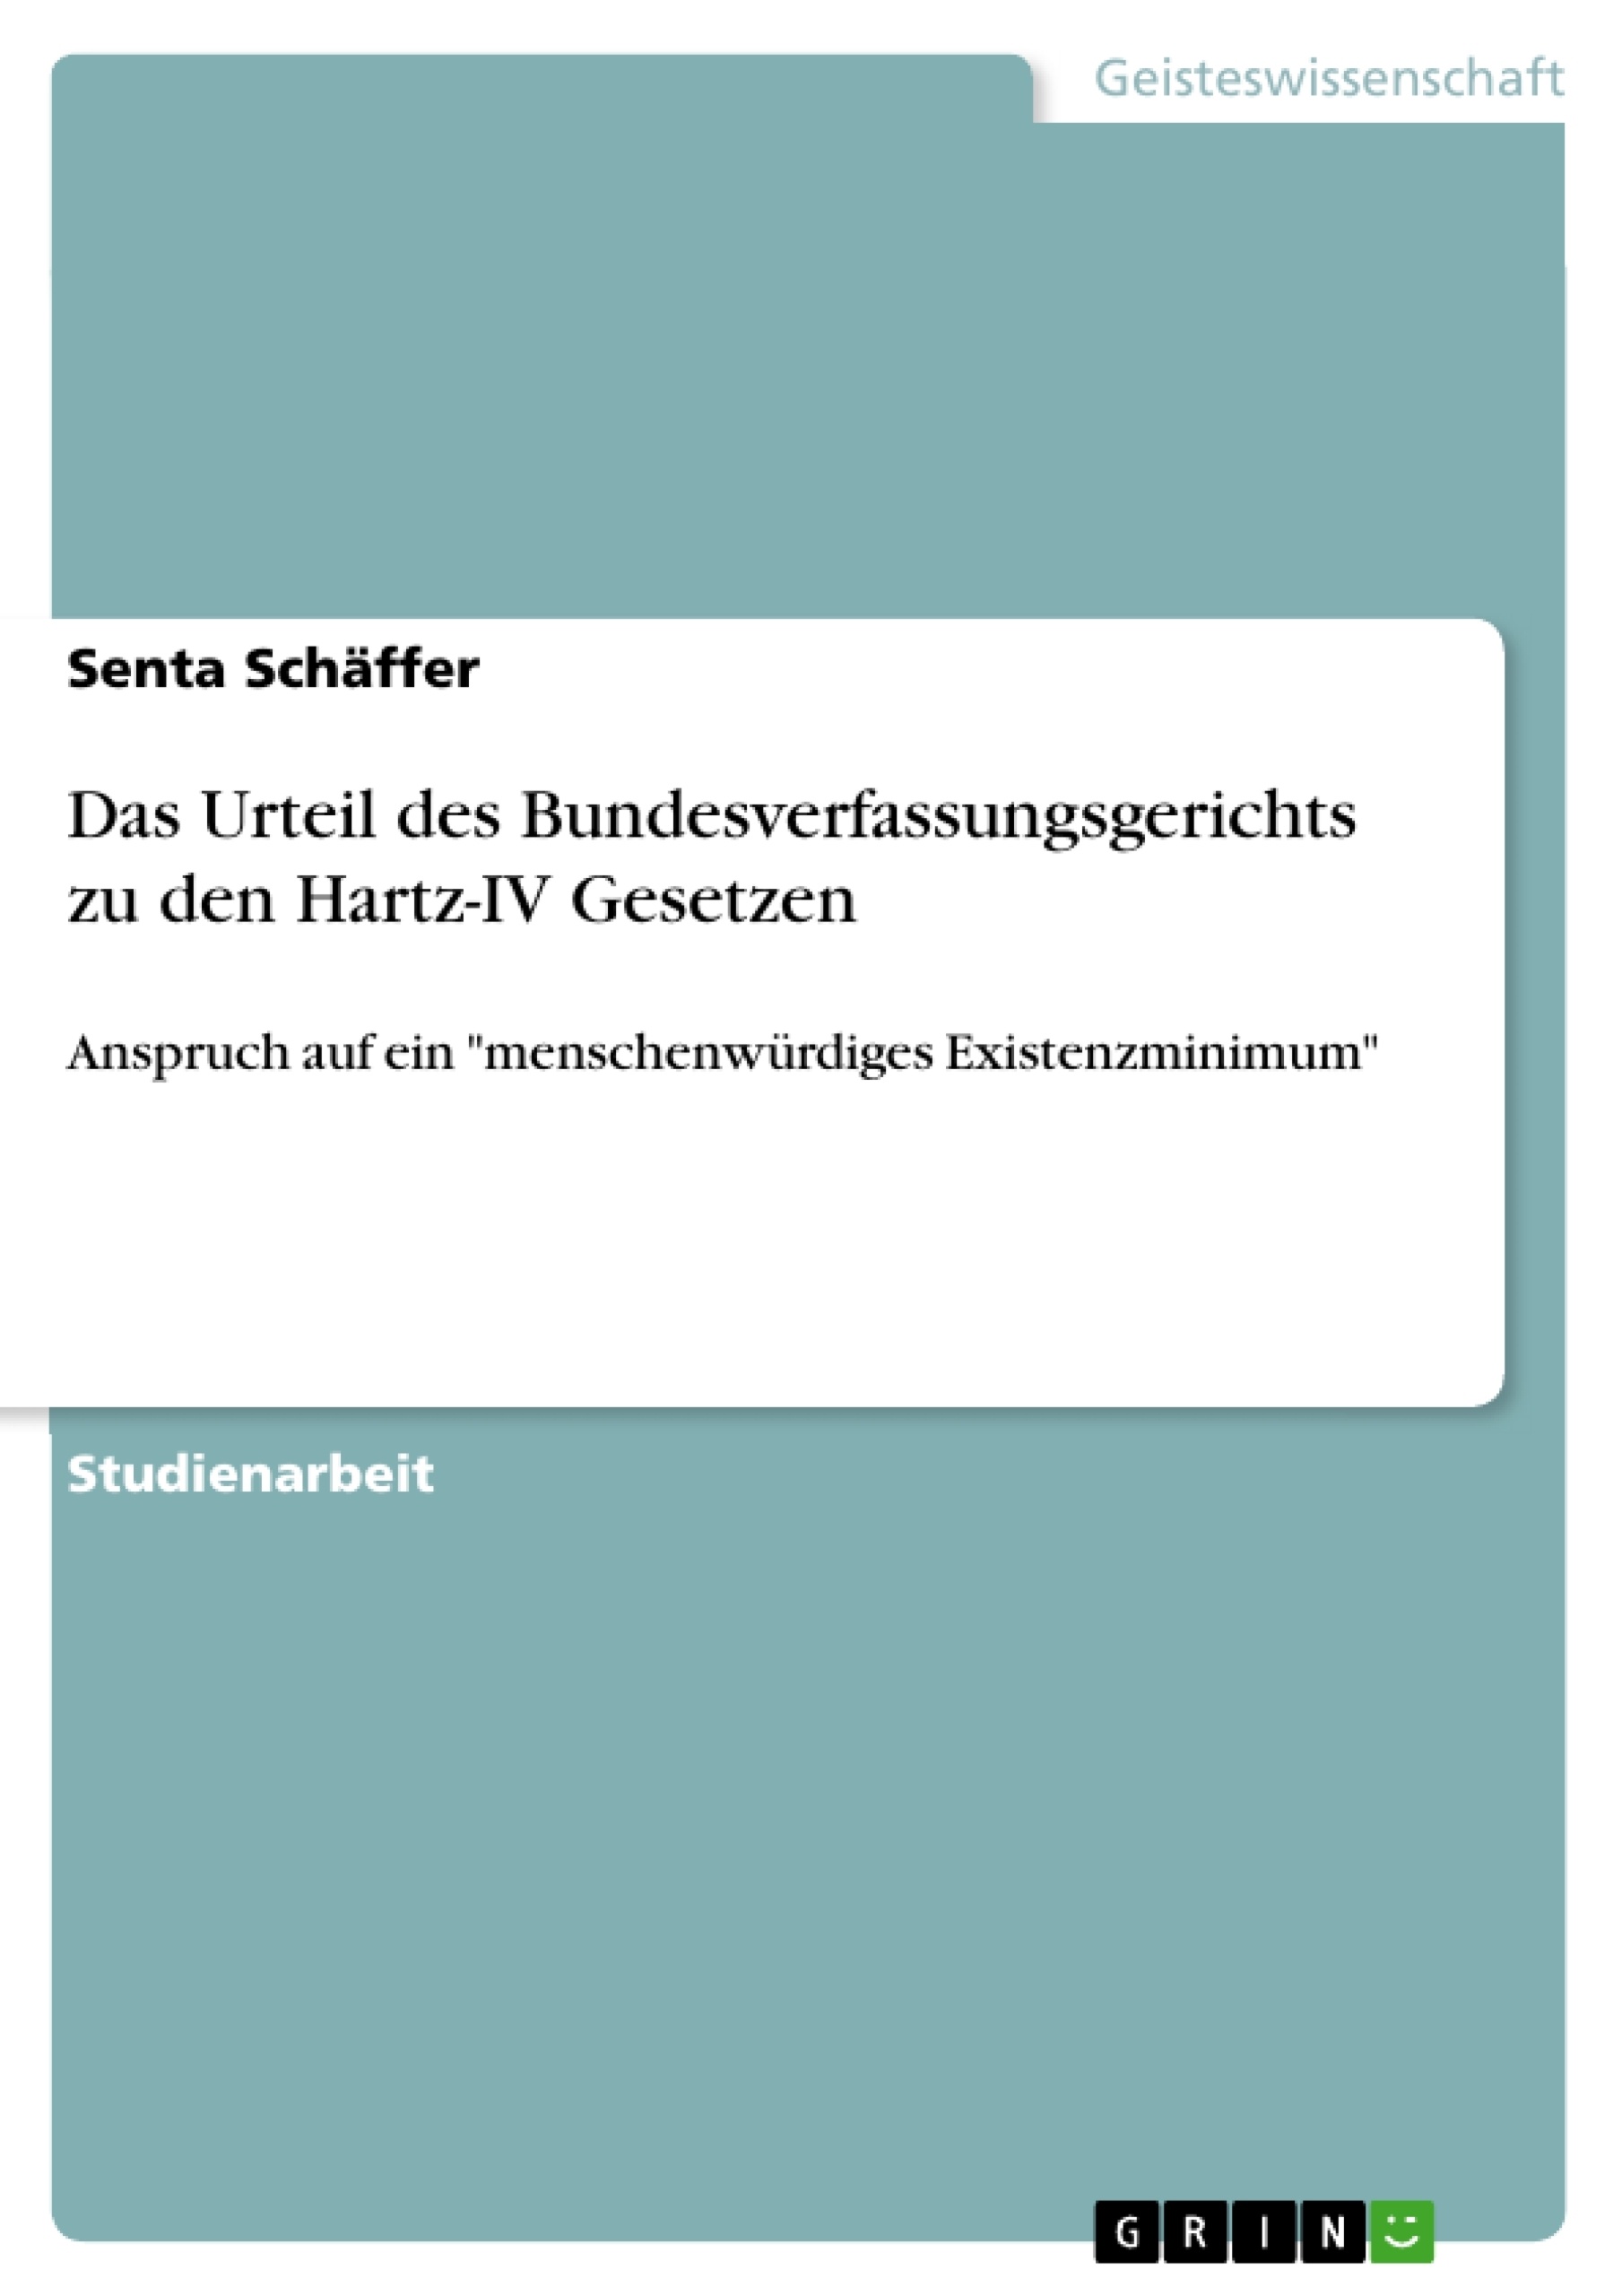 Title: Das Urteil des Bundesverfassungsgerichts zu den Hartz-IV Gesetzen